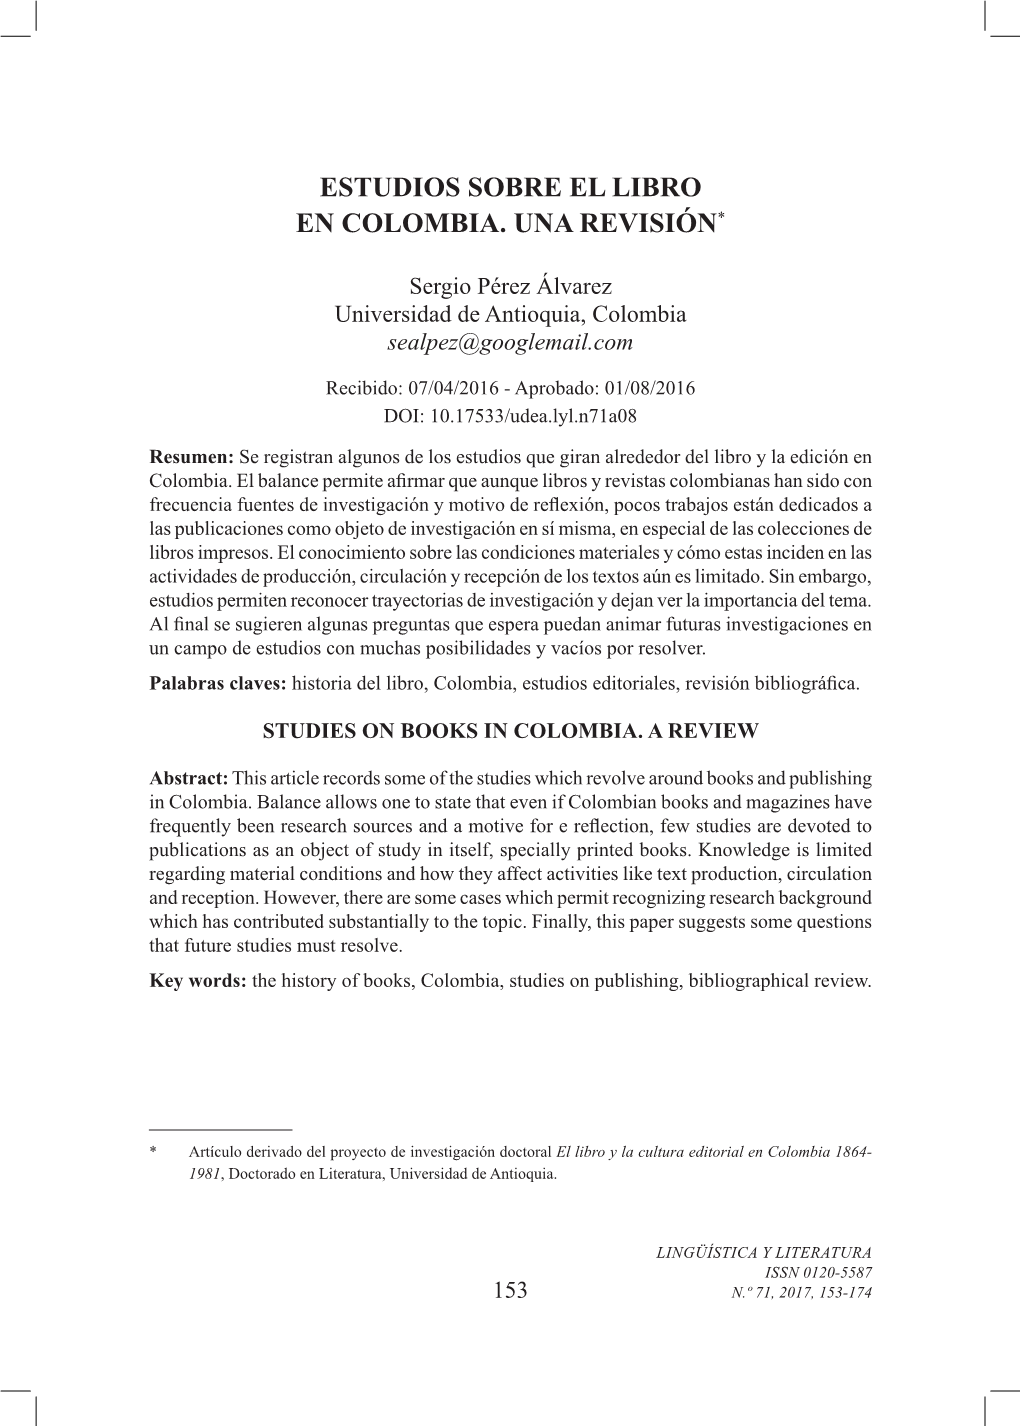 Estudios Sobre El Libro En Colombia. Una Revisión*